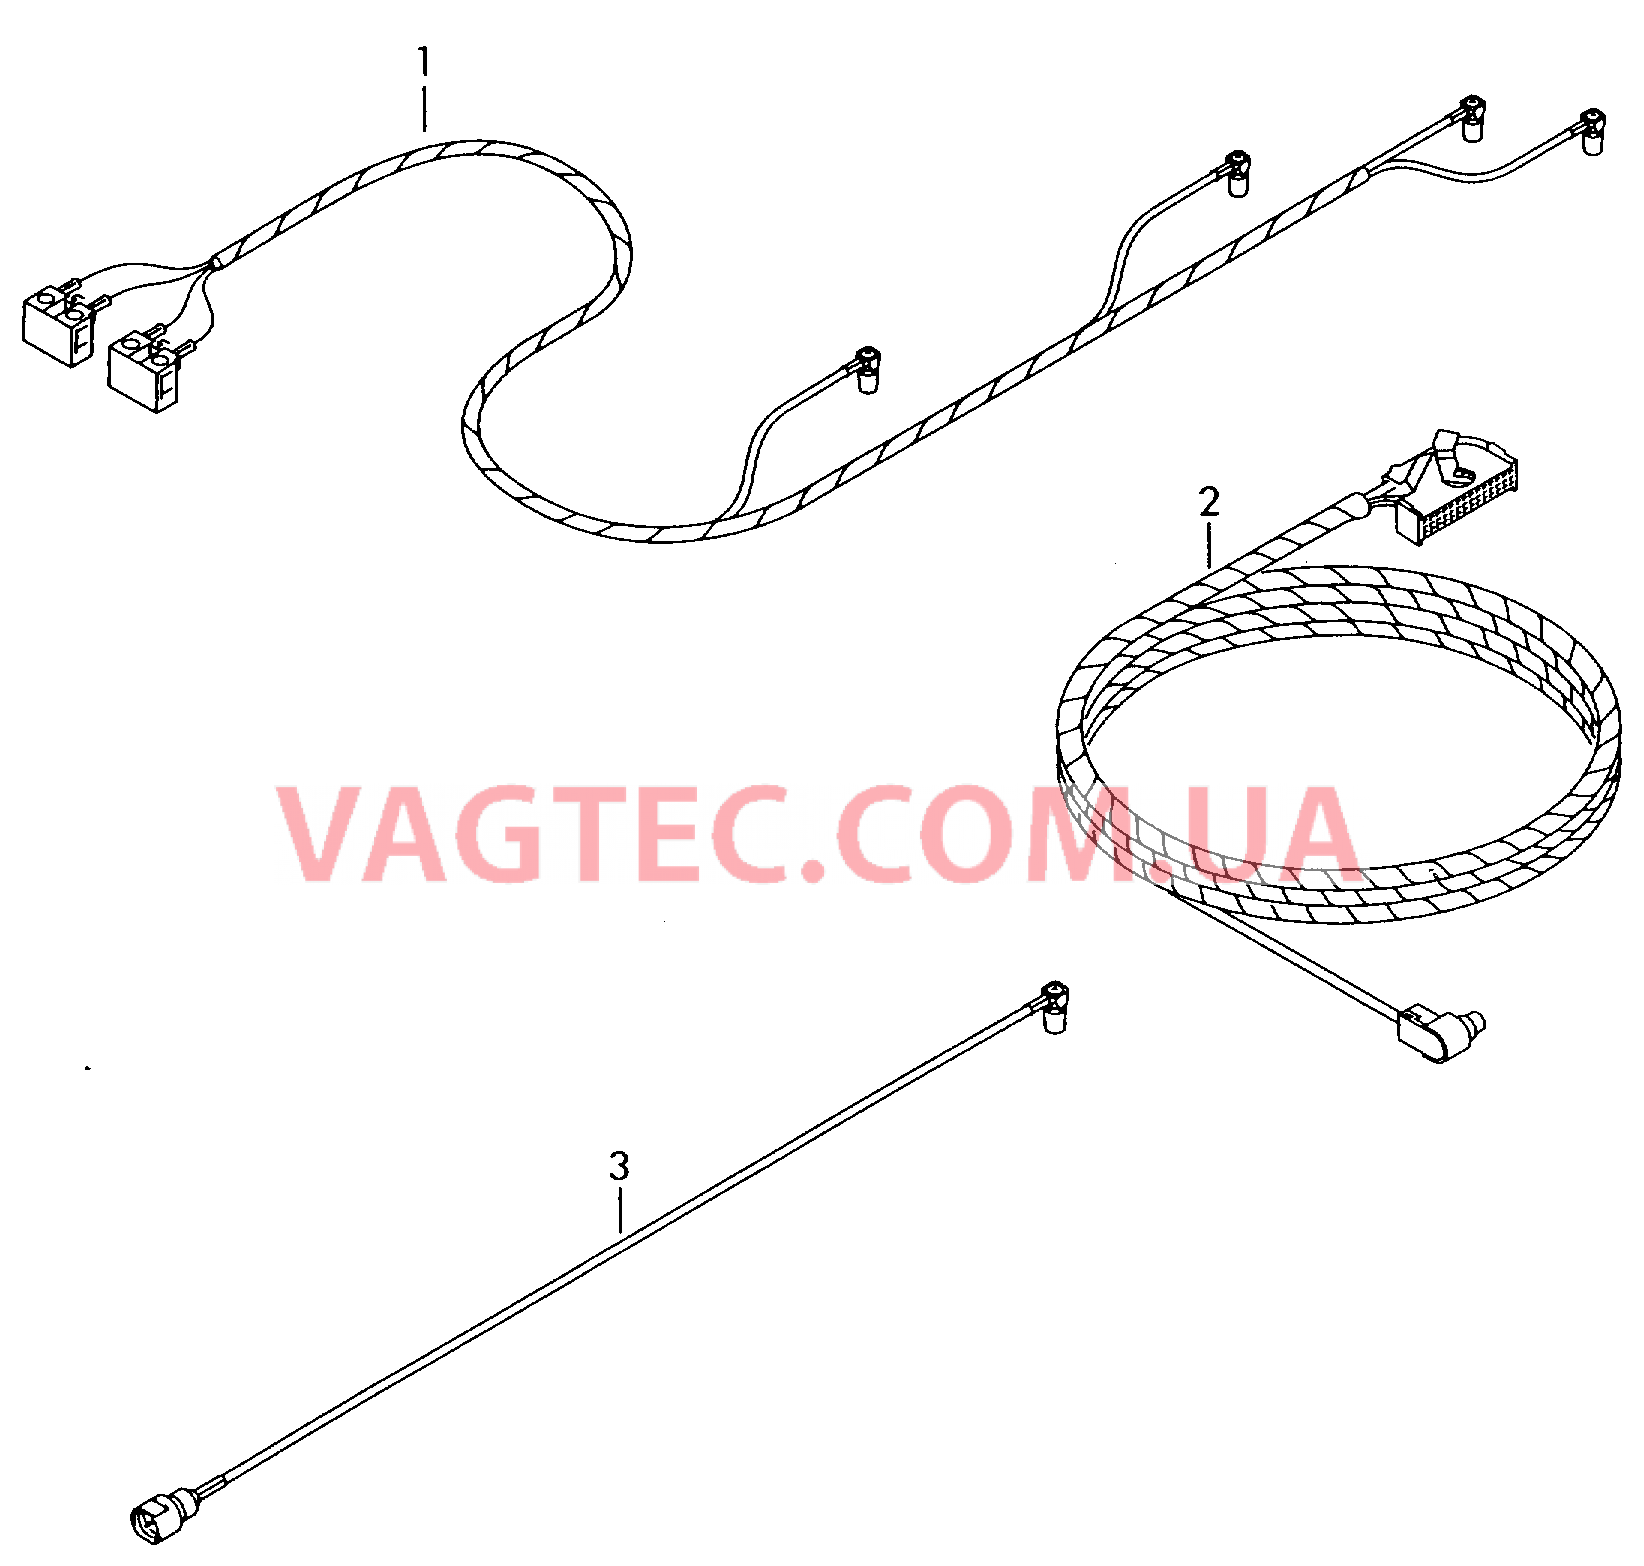 Жгут проводов системы навигации  Антенный кабель        также см. иллюстрацию:  для VOLKSWAGEN Passat 2005